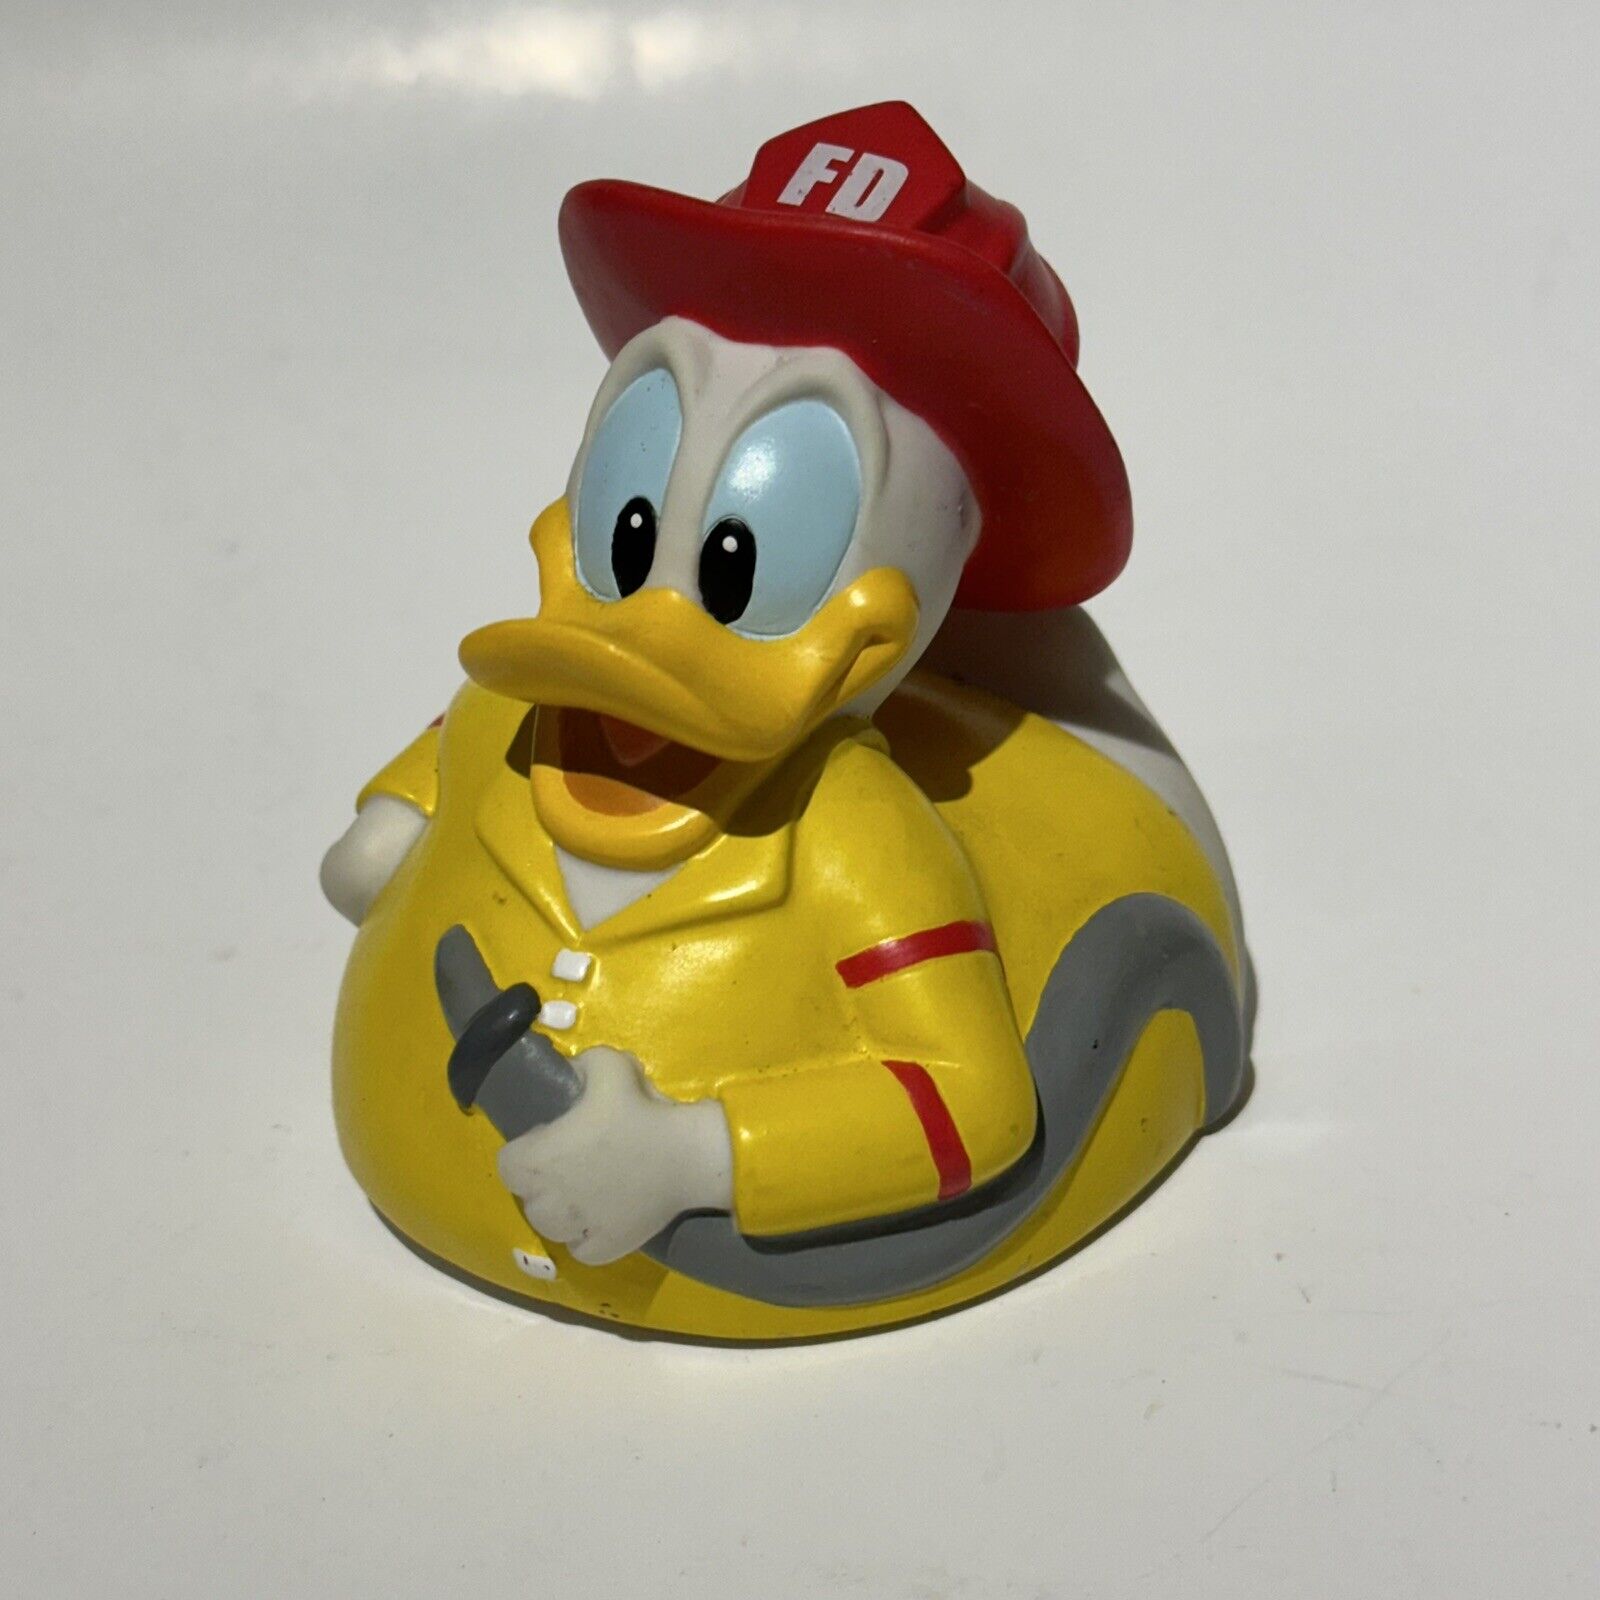 Donald Duck Firefighter Rubber Duckie, Disney Fireman Bath Toy FD